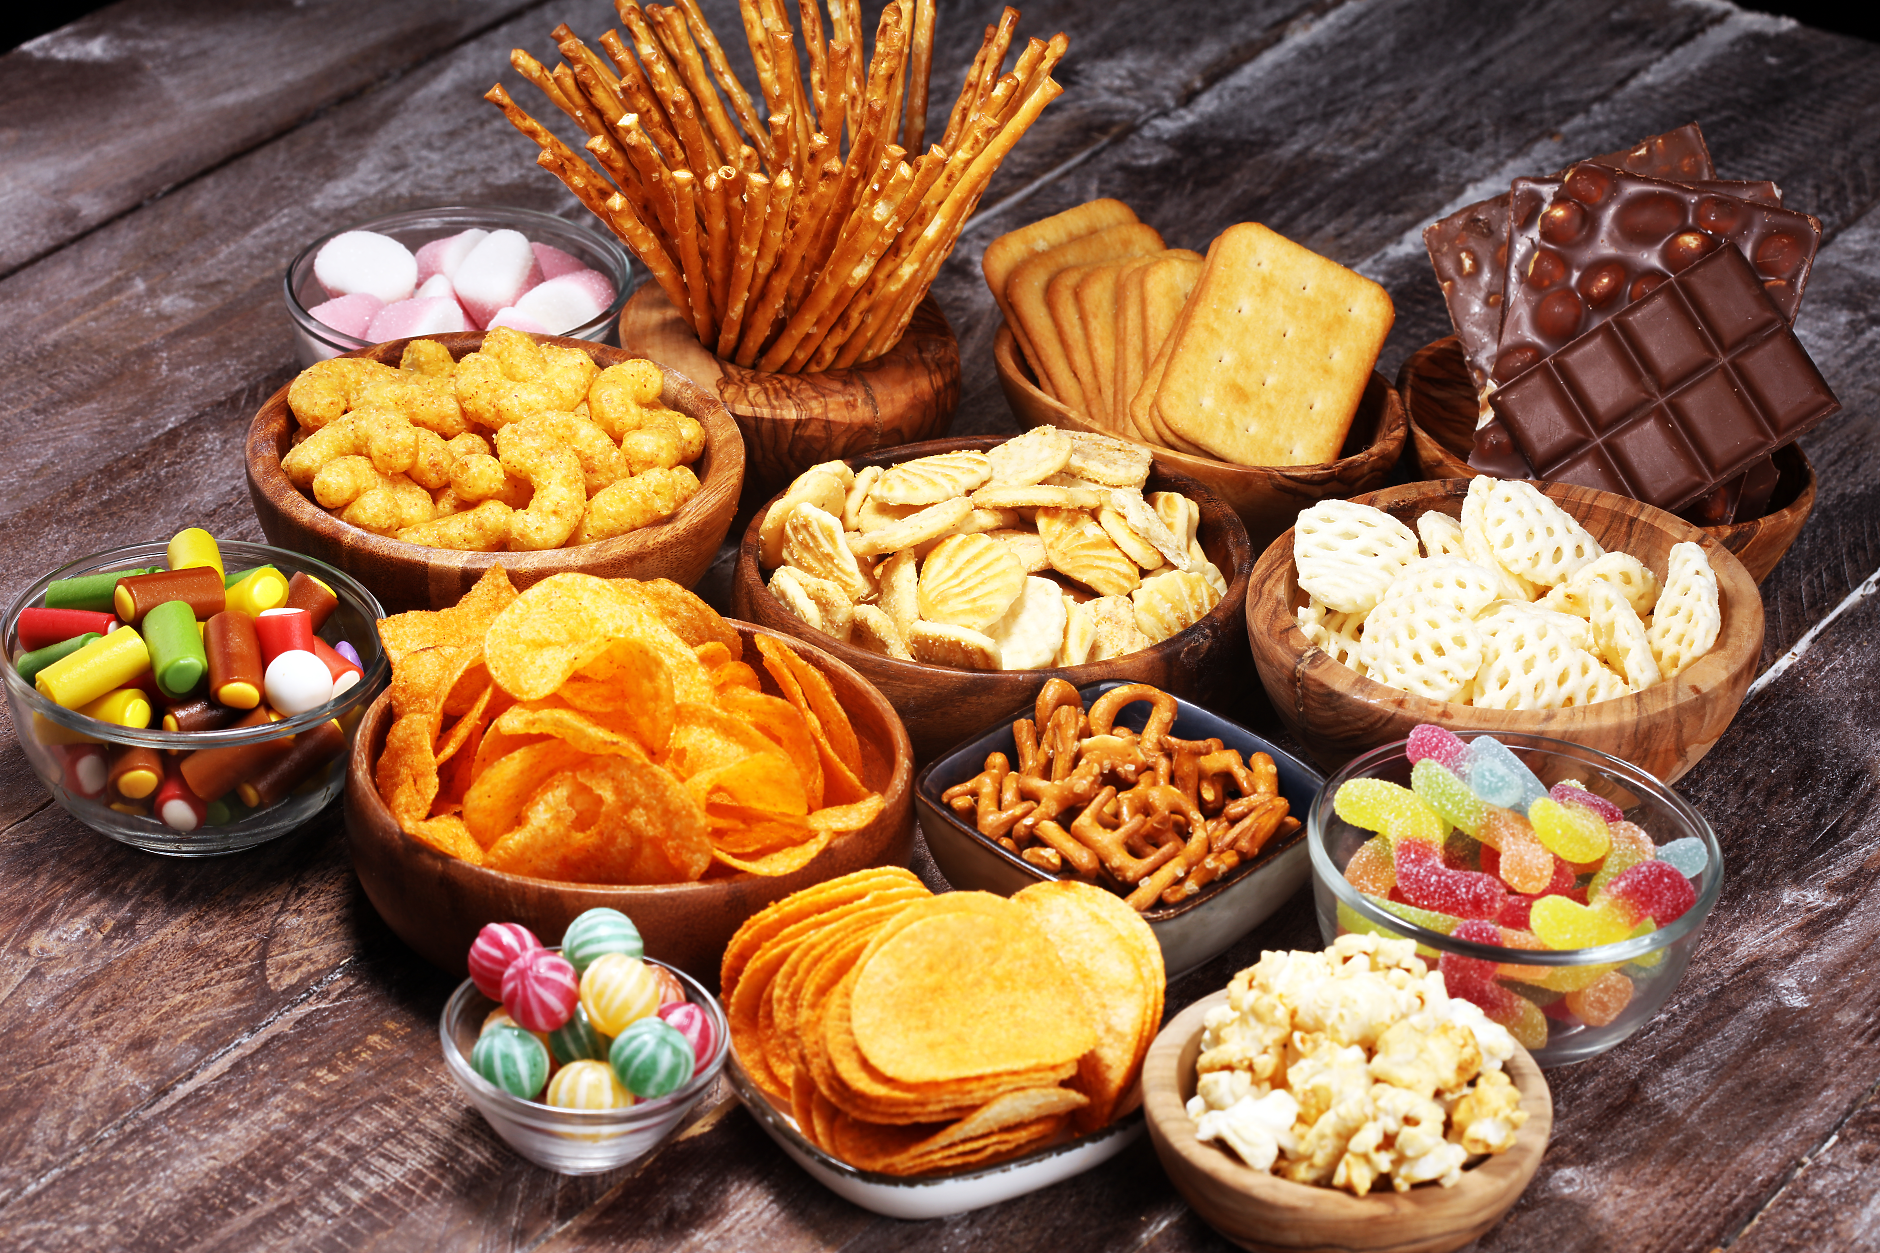 Проучване: Продуктите за похапване  все по-често заместват традиционното хранене